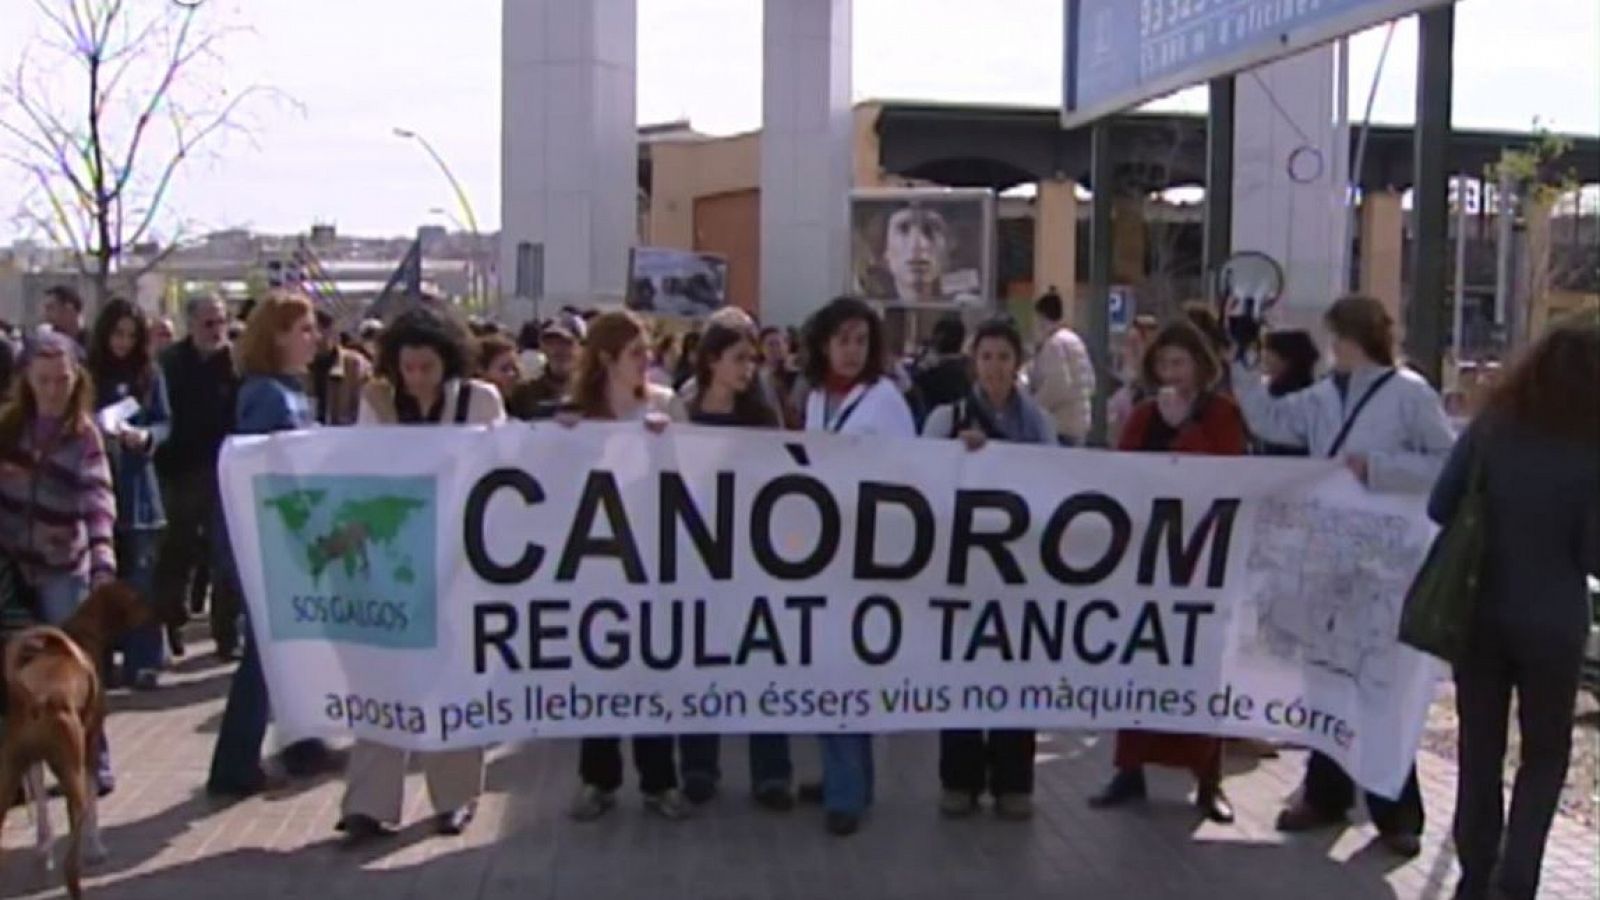 Arxiu TVE Catalunya - L'Informatiu - Manifestació pel maltracte als llebrers del canòdrom